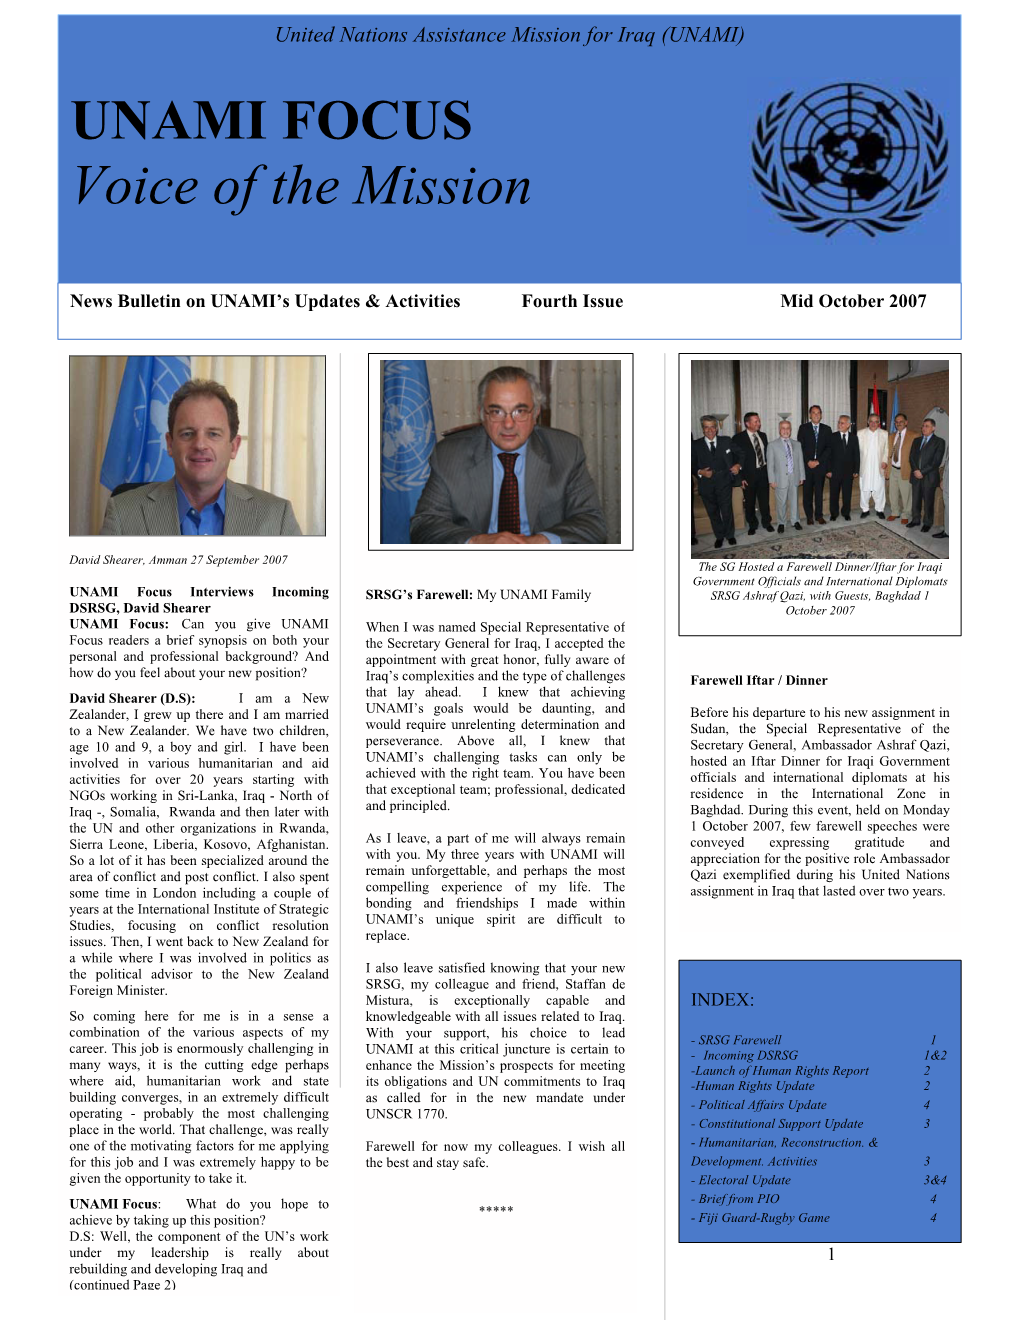 UNAMI FOCUS Voice of the Mission